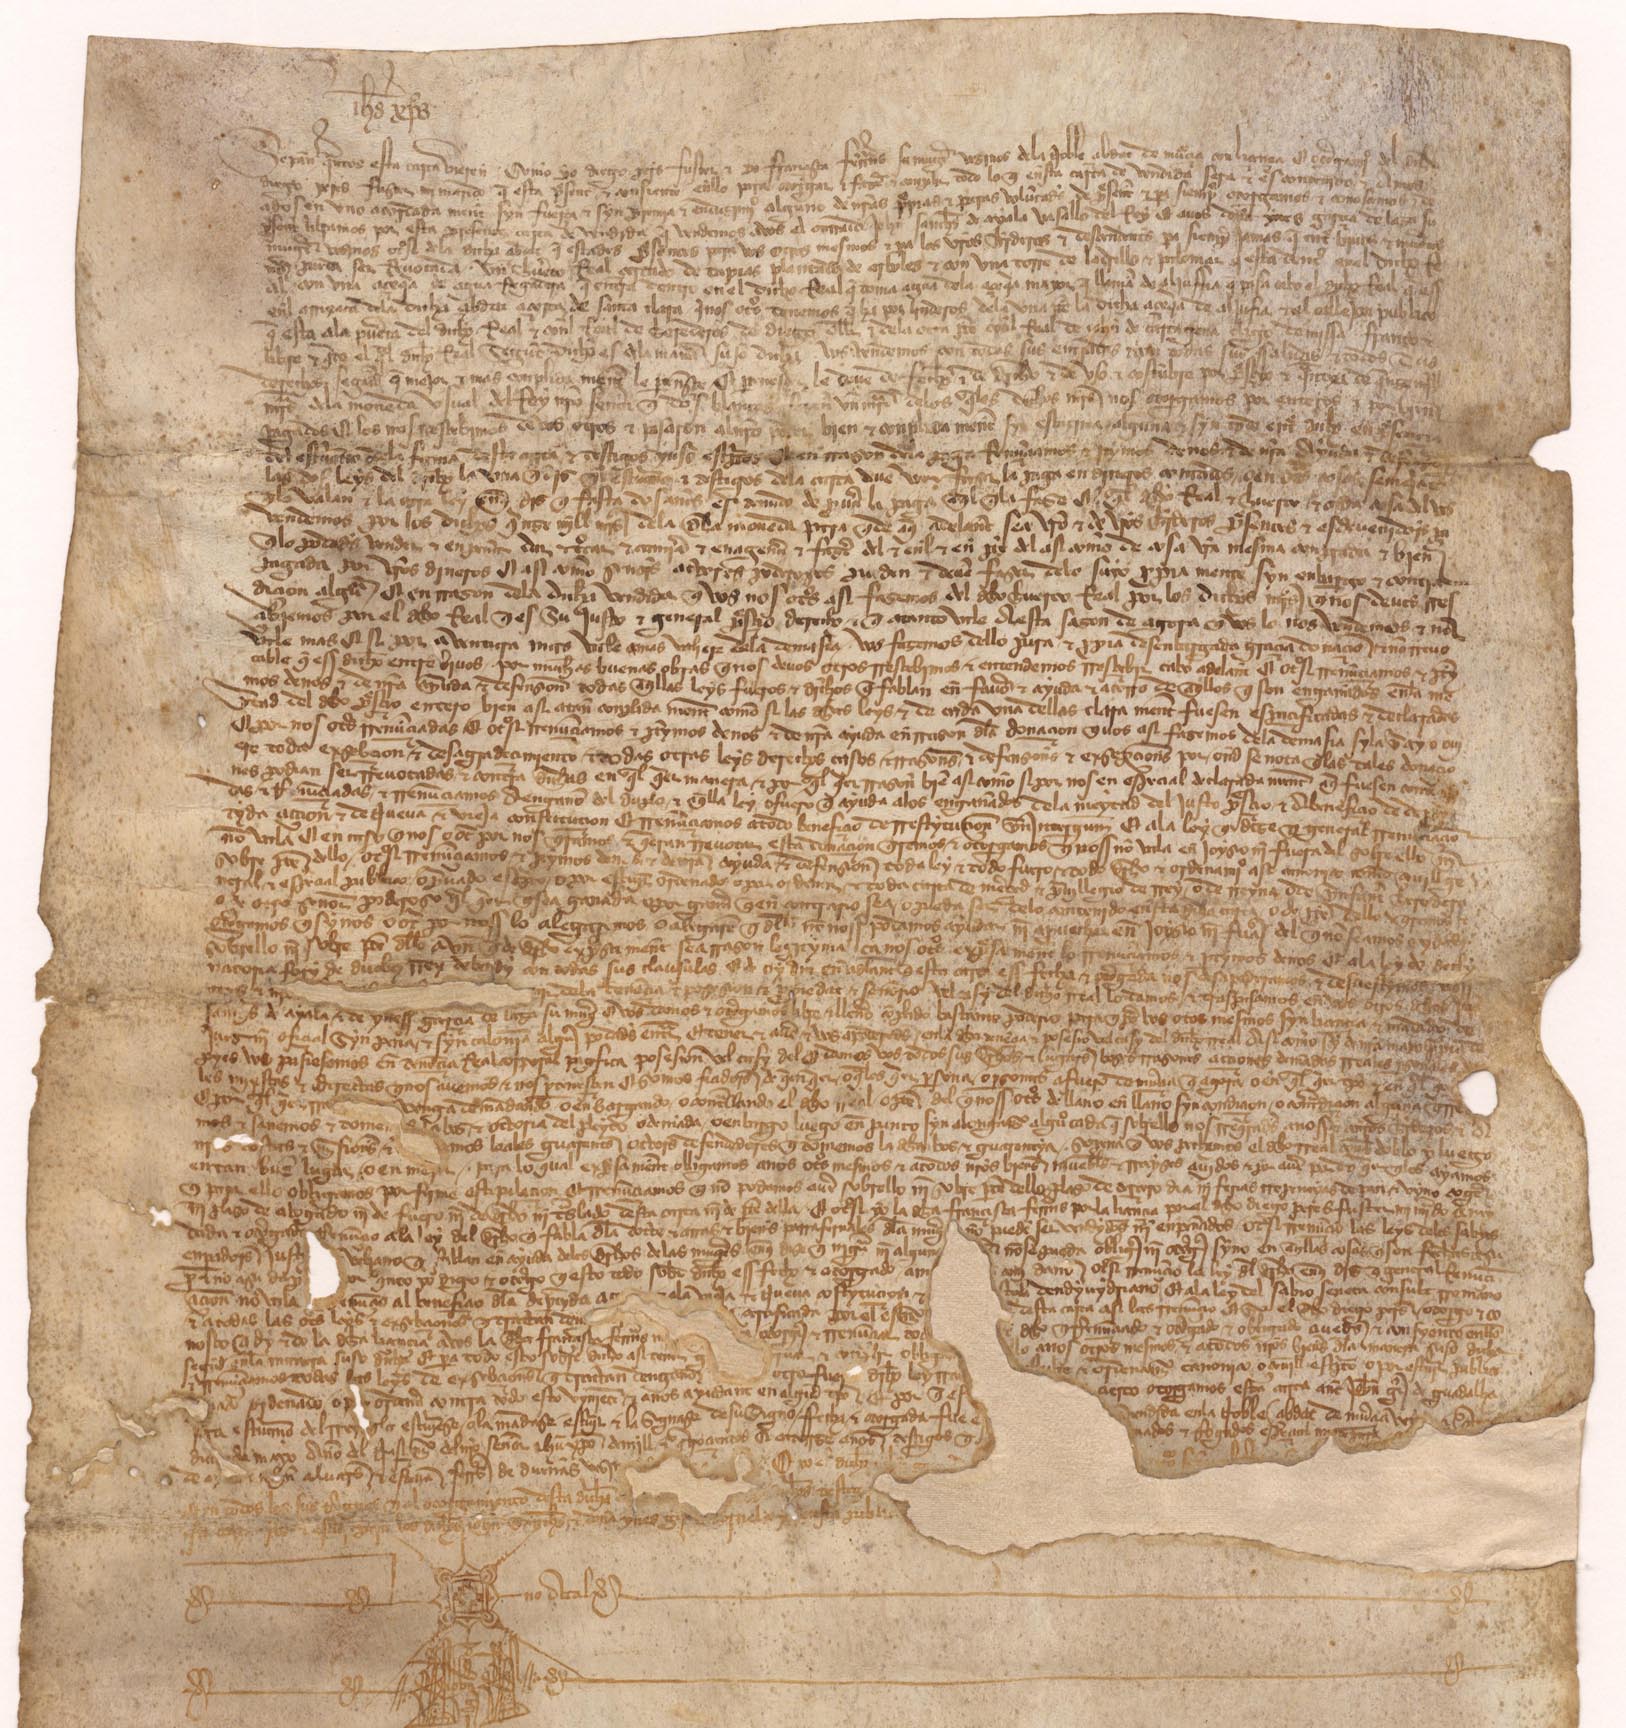 Carta de venta de Diego Pérez Fuster y Francisca Fernández a favor de Juan Sánchez de Ayala e Inés García de Laza de un huerto real cercado en la Arrixaca.